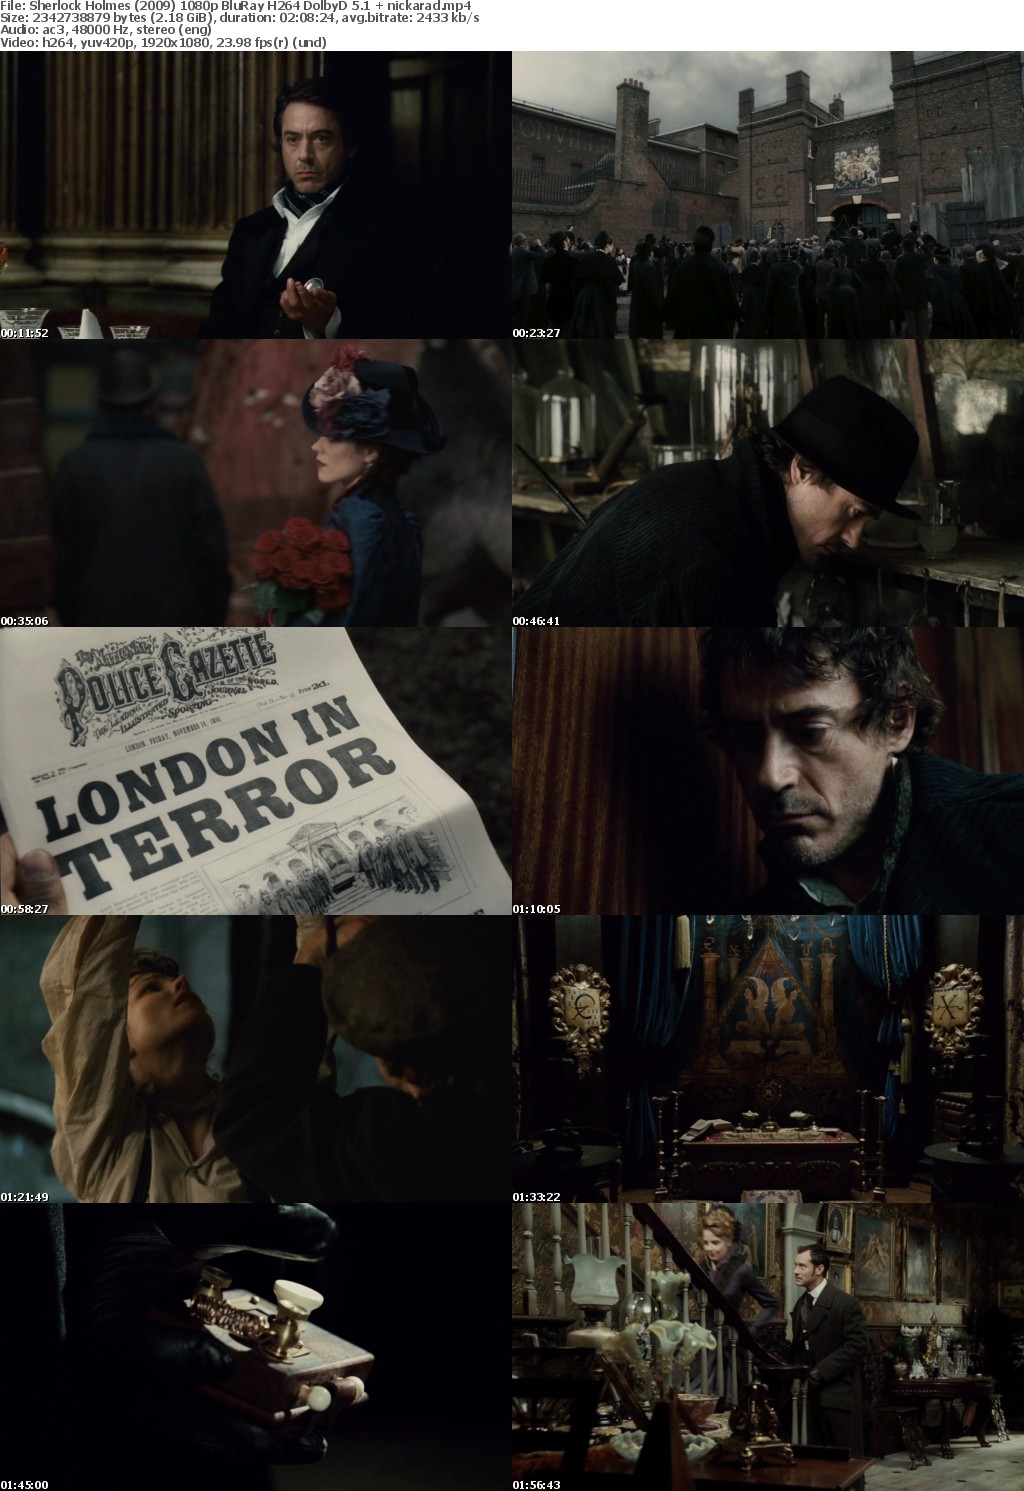 Sherlock Holmes (2009) 1080p BluRay H264 DolbyD 5 1 nickarad